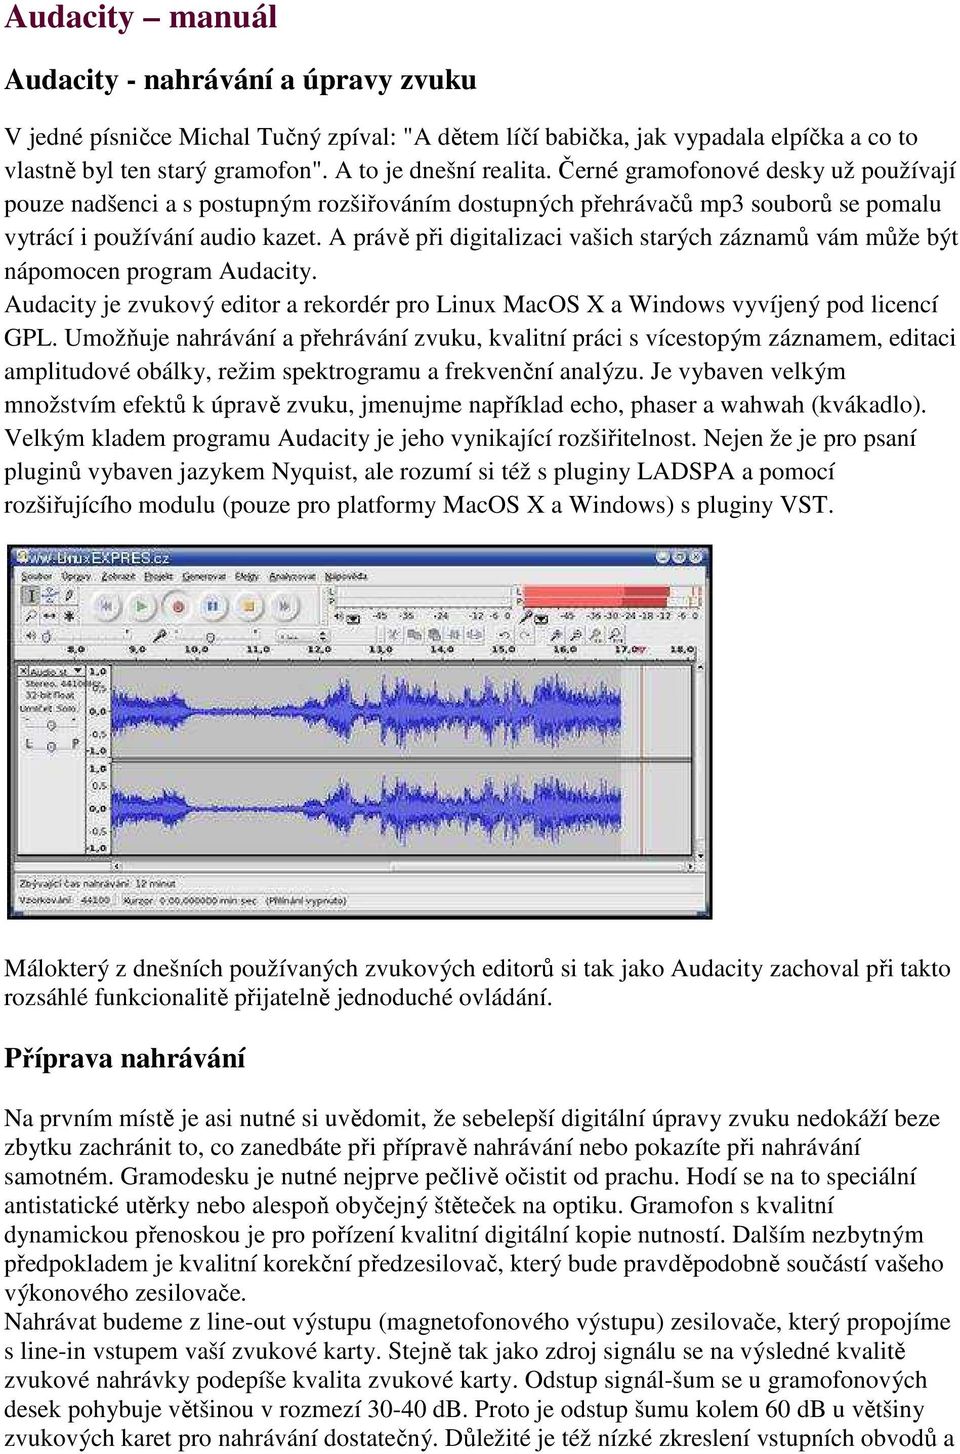 Audacity manuál. Audacity - nahrávání a úpravy zvuku. Příprava nahrávání -  PDF Free Download